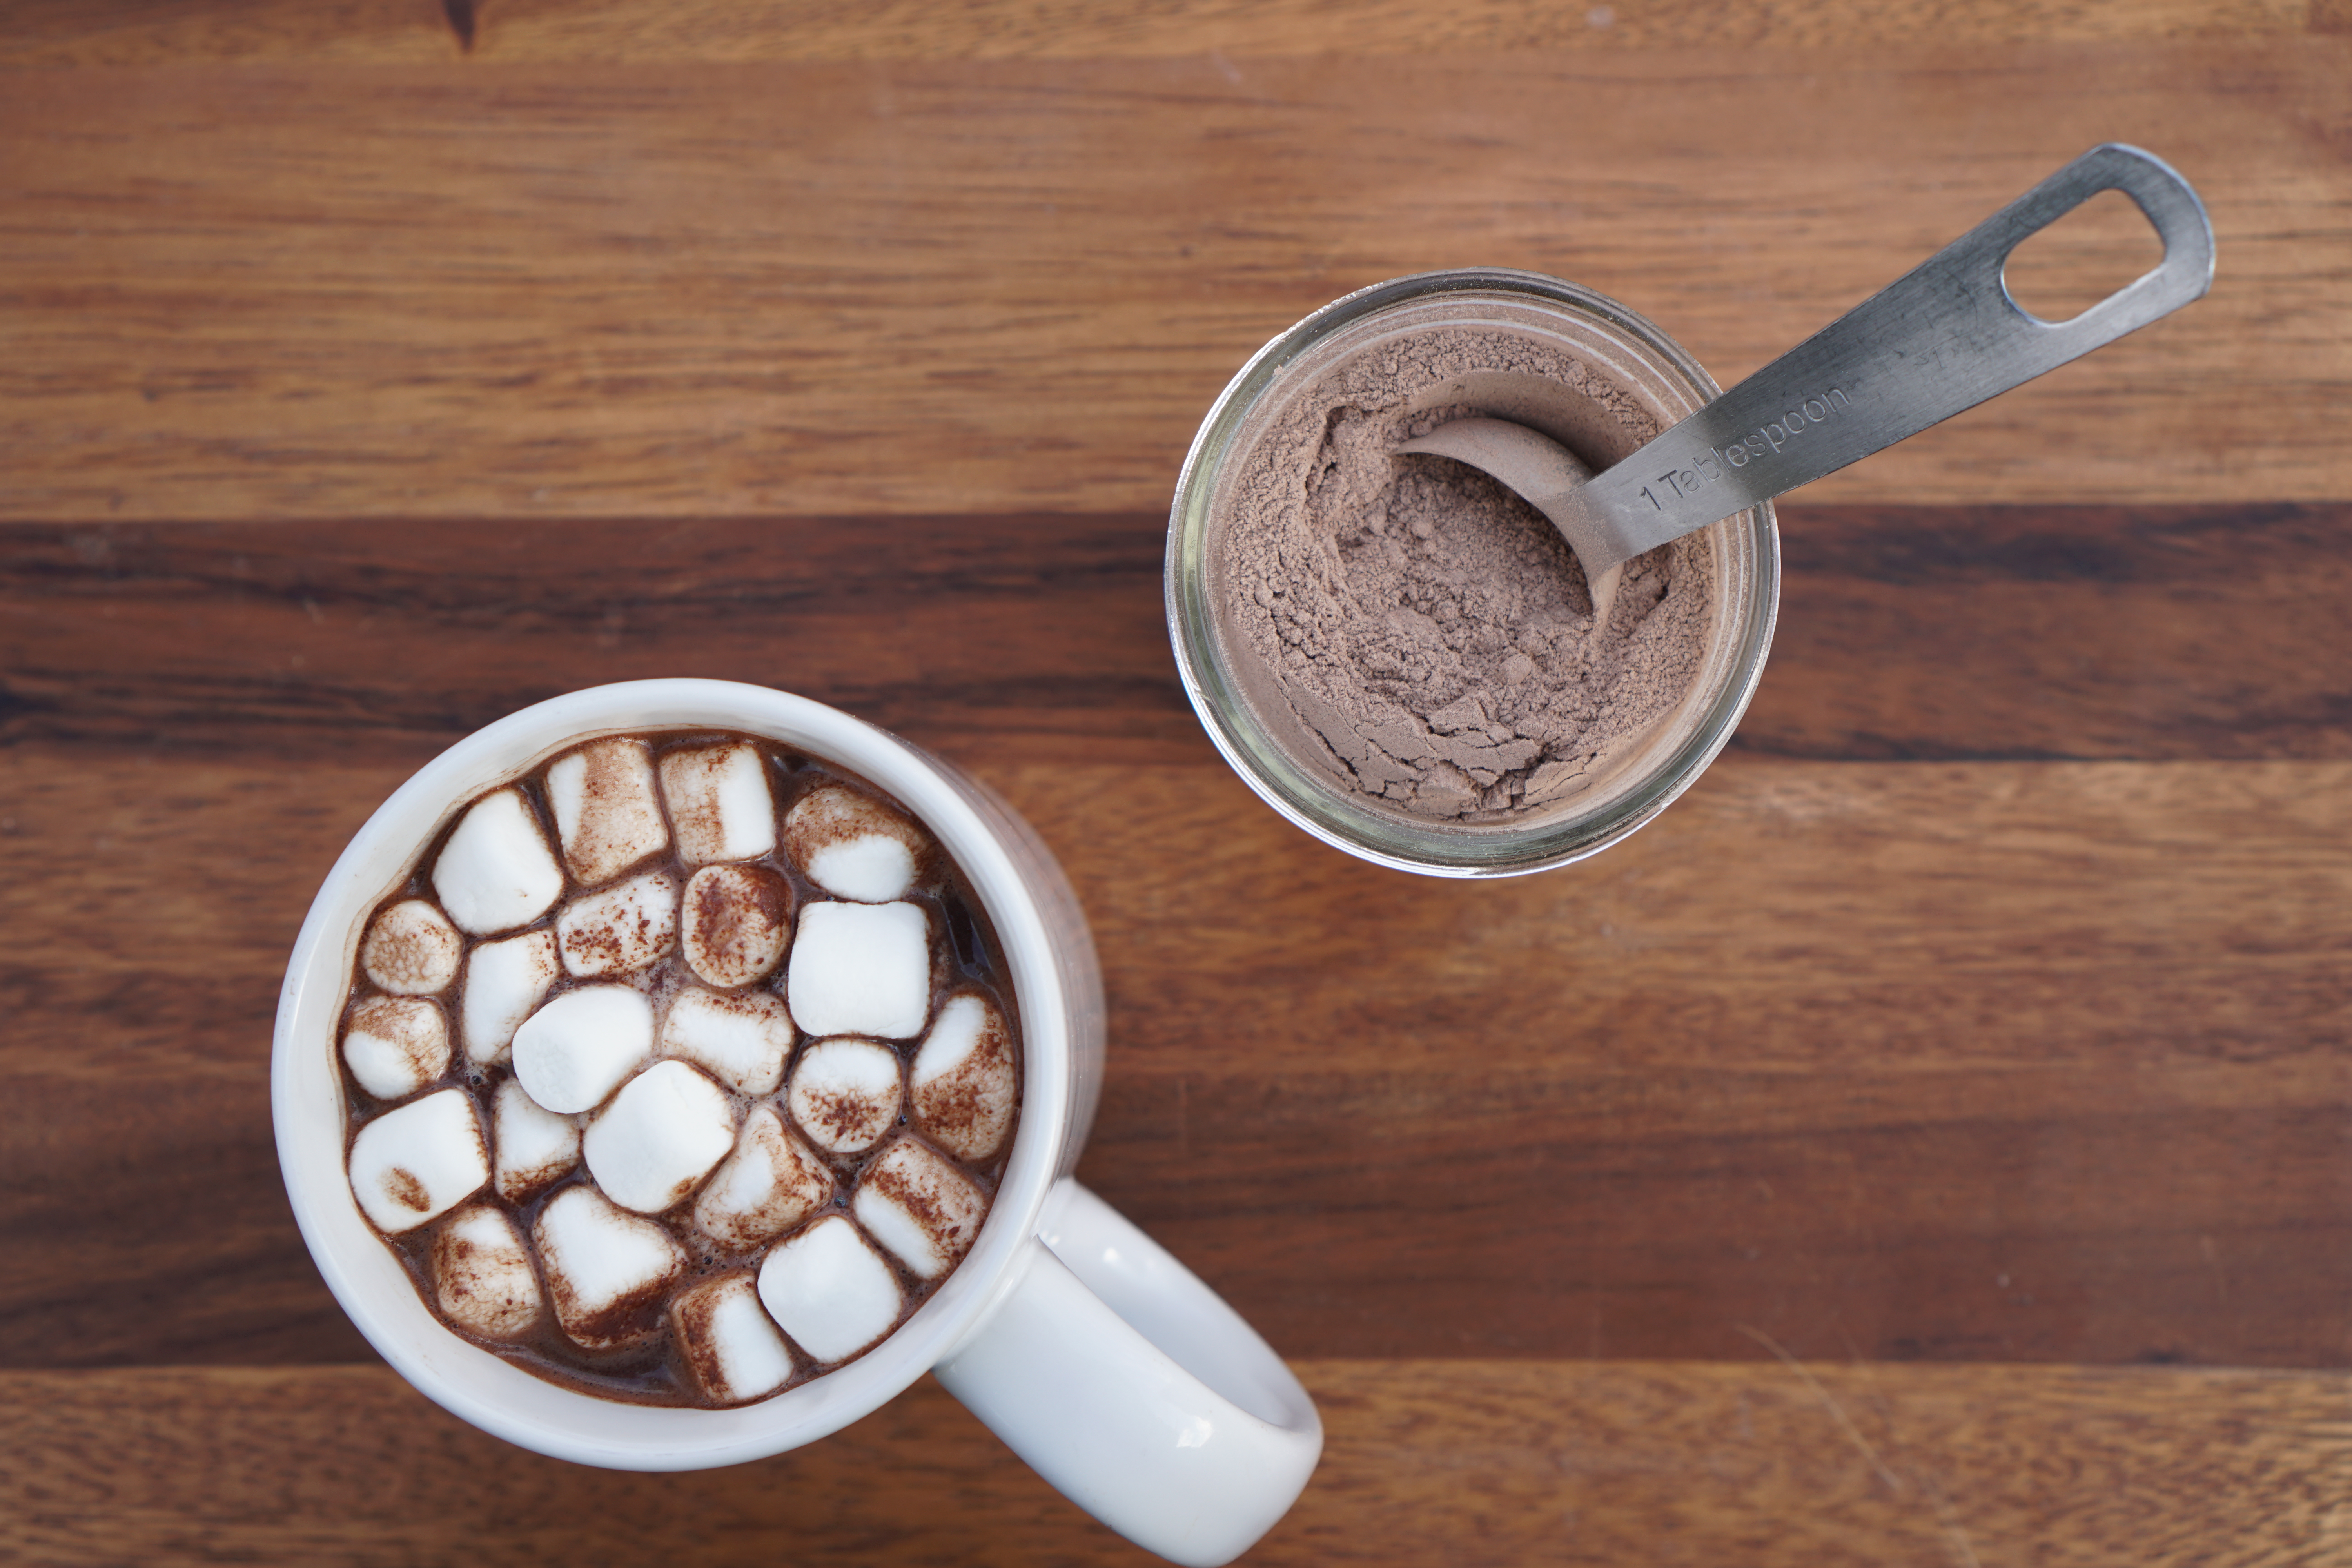 Vitamix: Homemade Hot Chocolate Mix